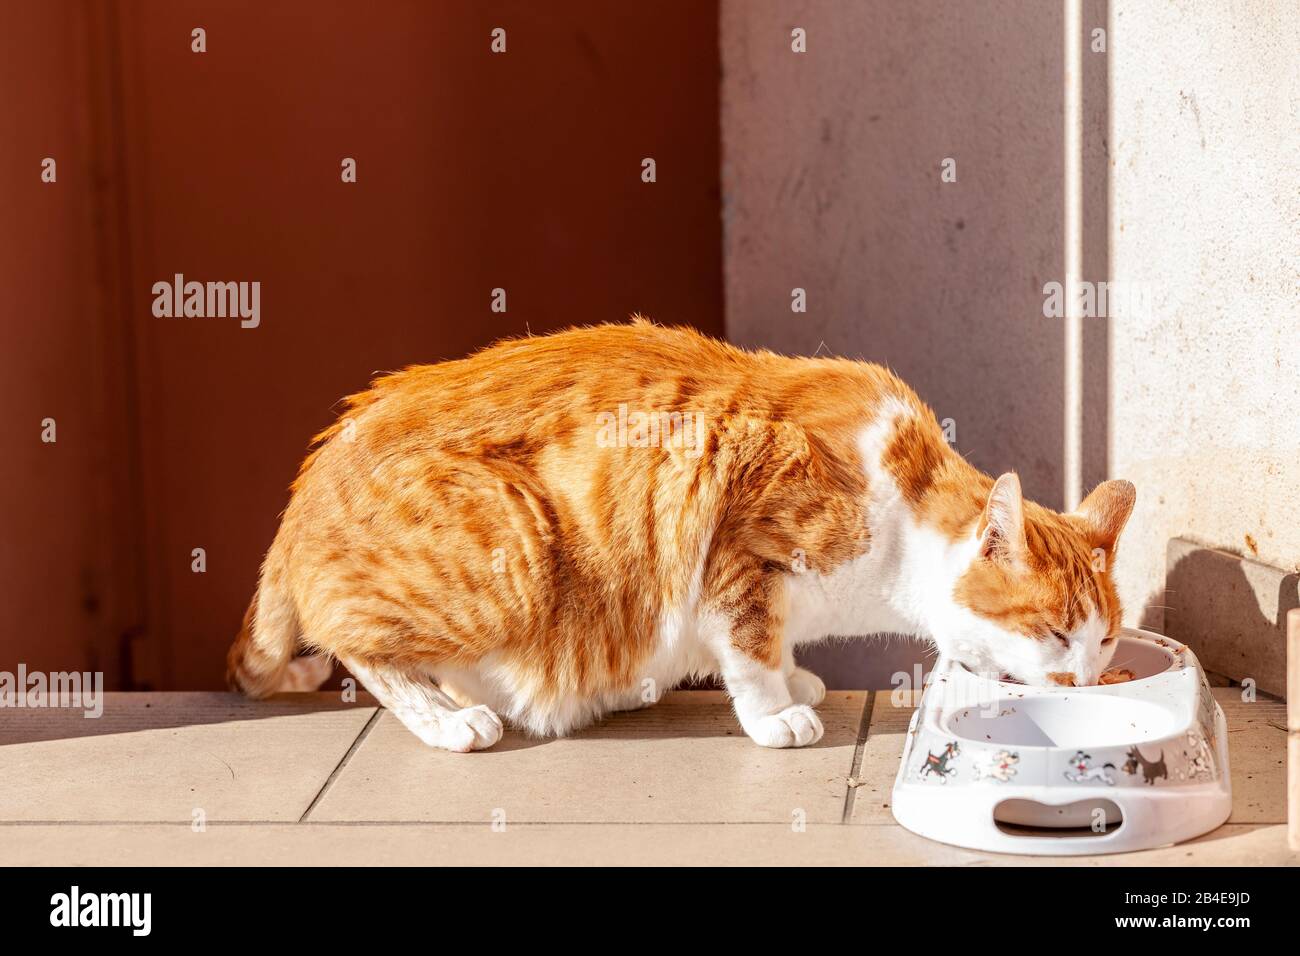 Cat eats from feeding bowl Stock Photo